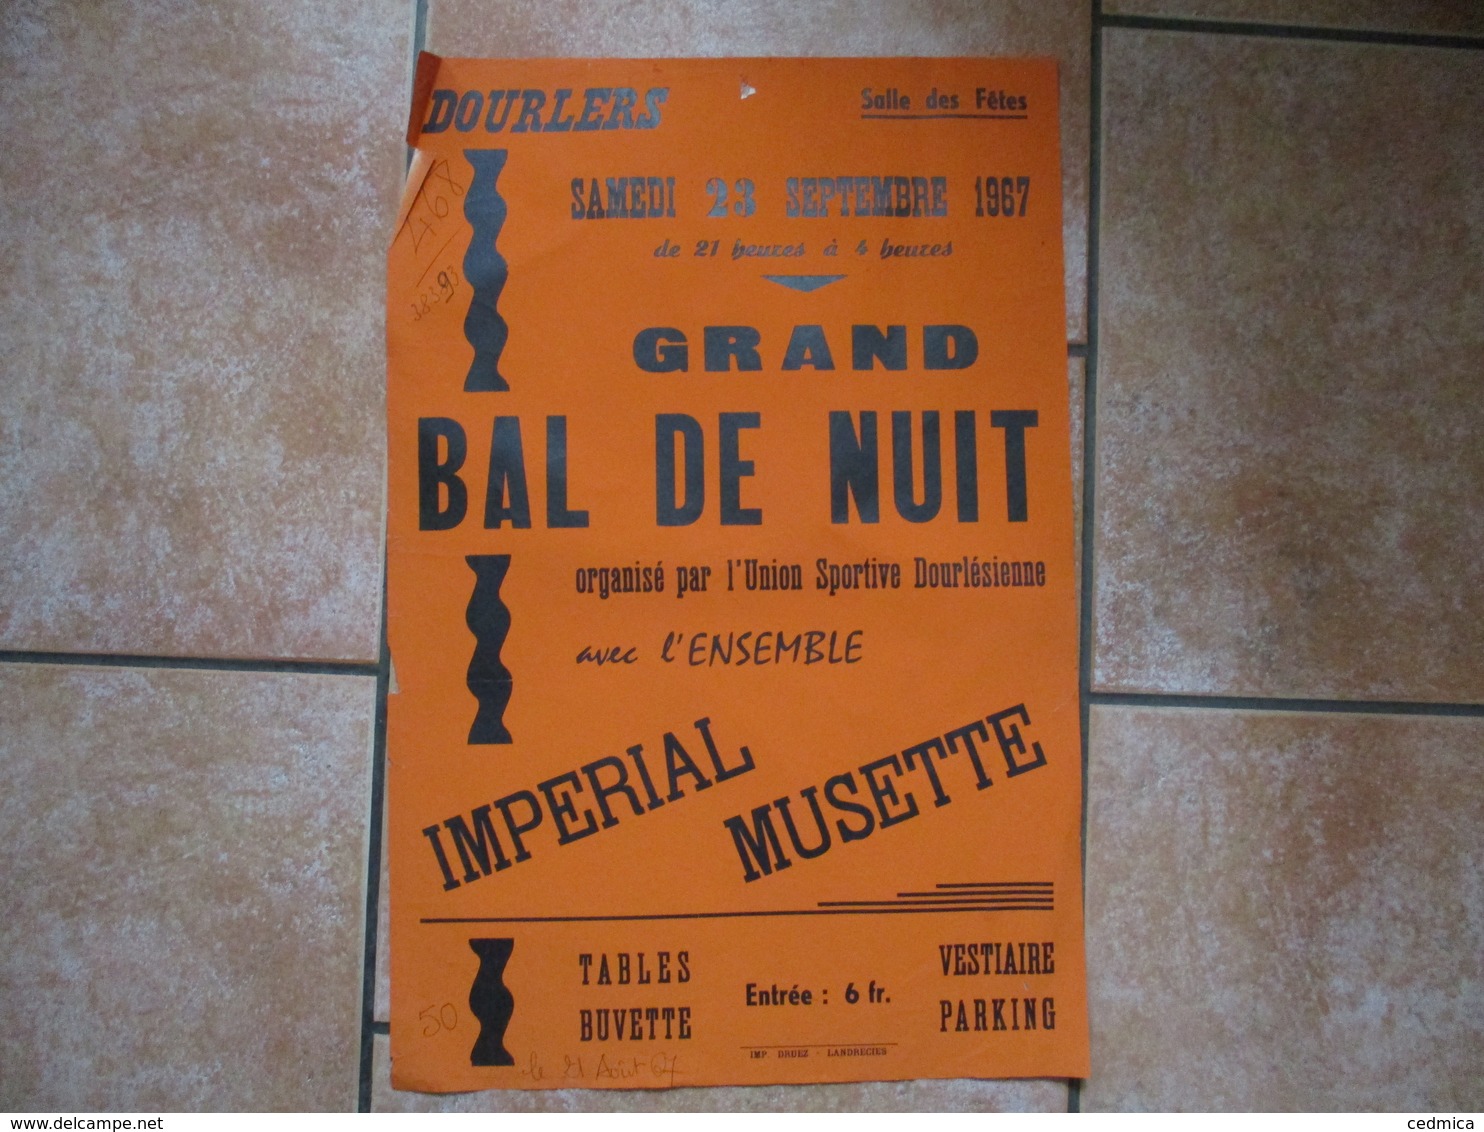 DOURLERS SAMEDI 23 SEPTEMBRE 1967 GRAND BAL DE NUIT UNION SPORTIVE DOURLESIENNE AVEC ENSEMBLE IMPERIAL MUSETTE 60cm/40cm - Affiches